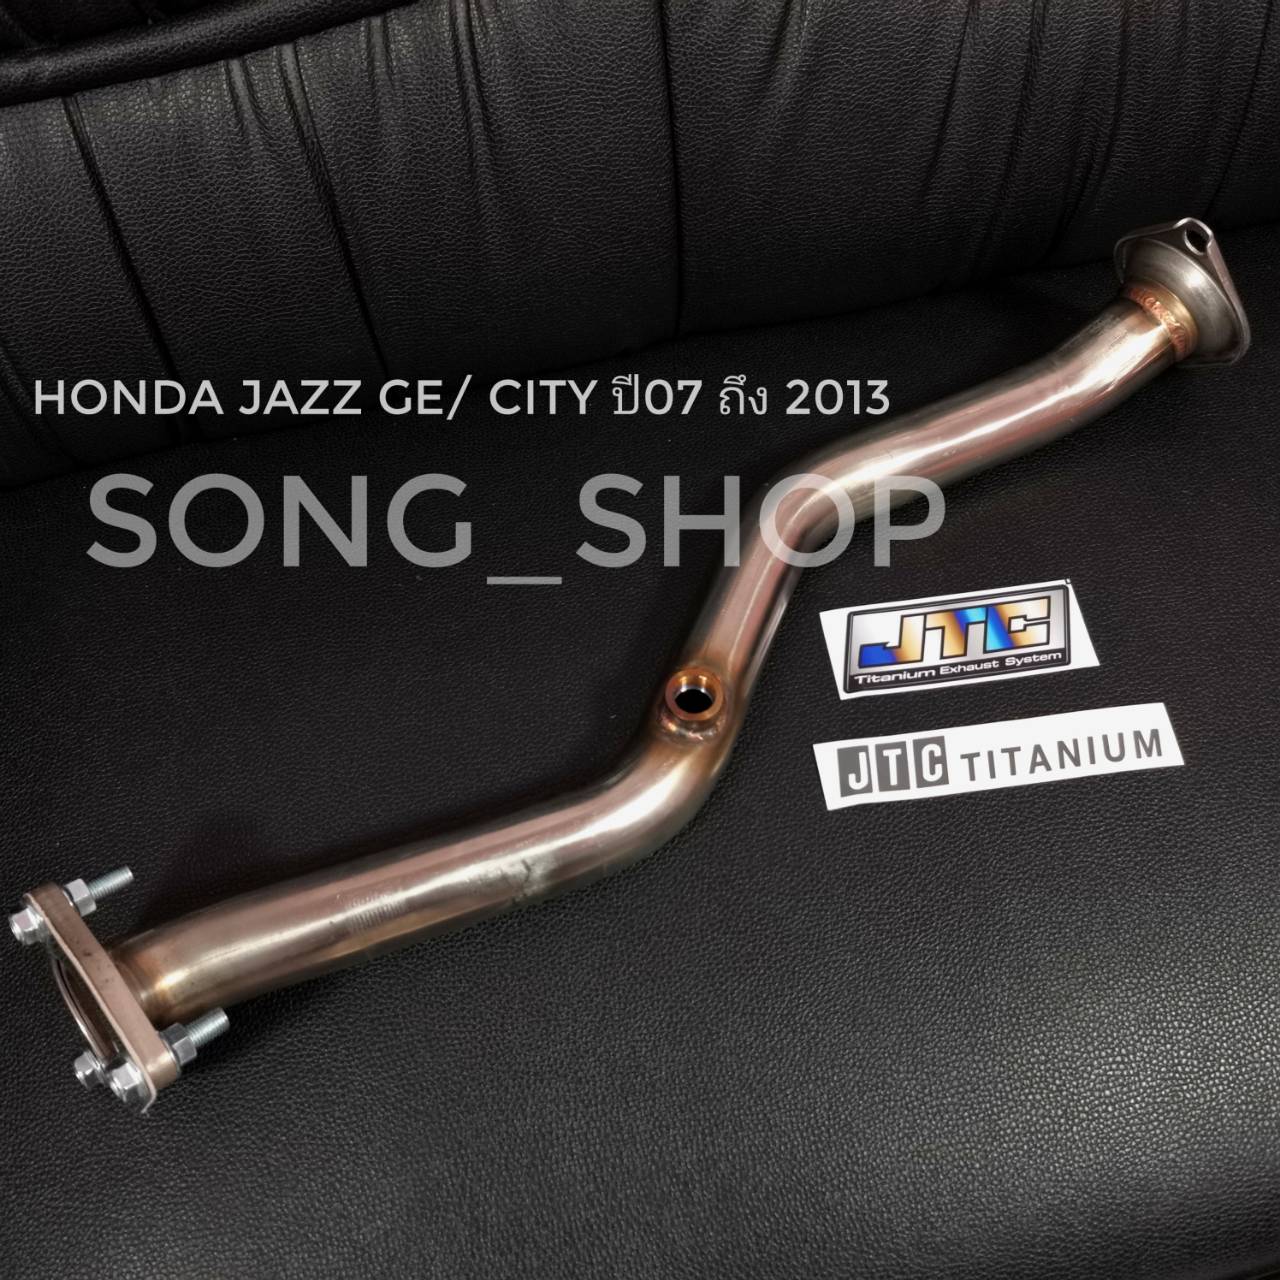 ท่อแทนแคท ท่อไอเสีย Honda Jazz GE / City ปี 07ถึง2013 jtc Titanium